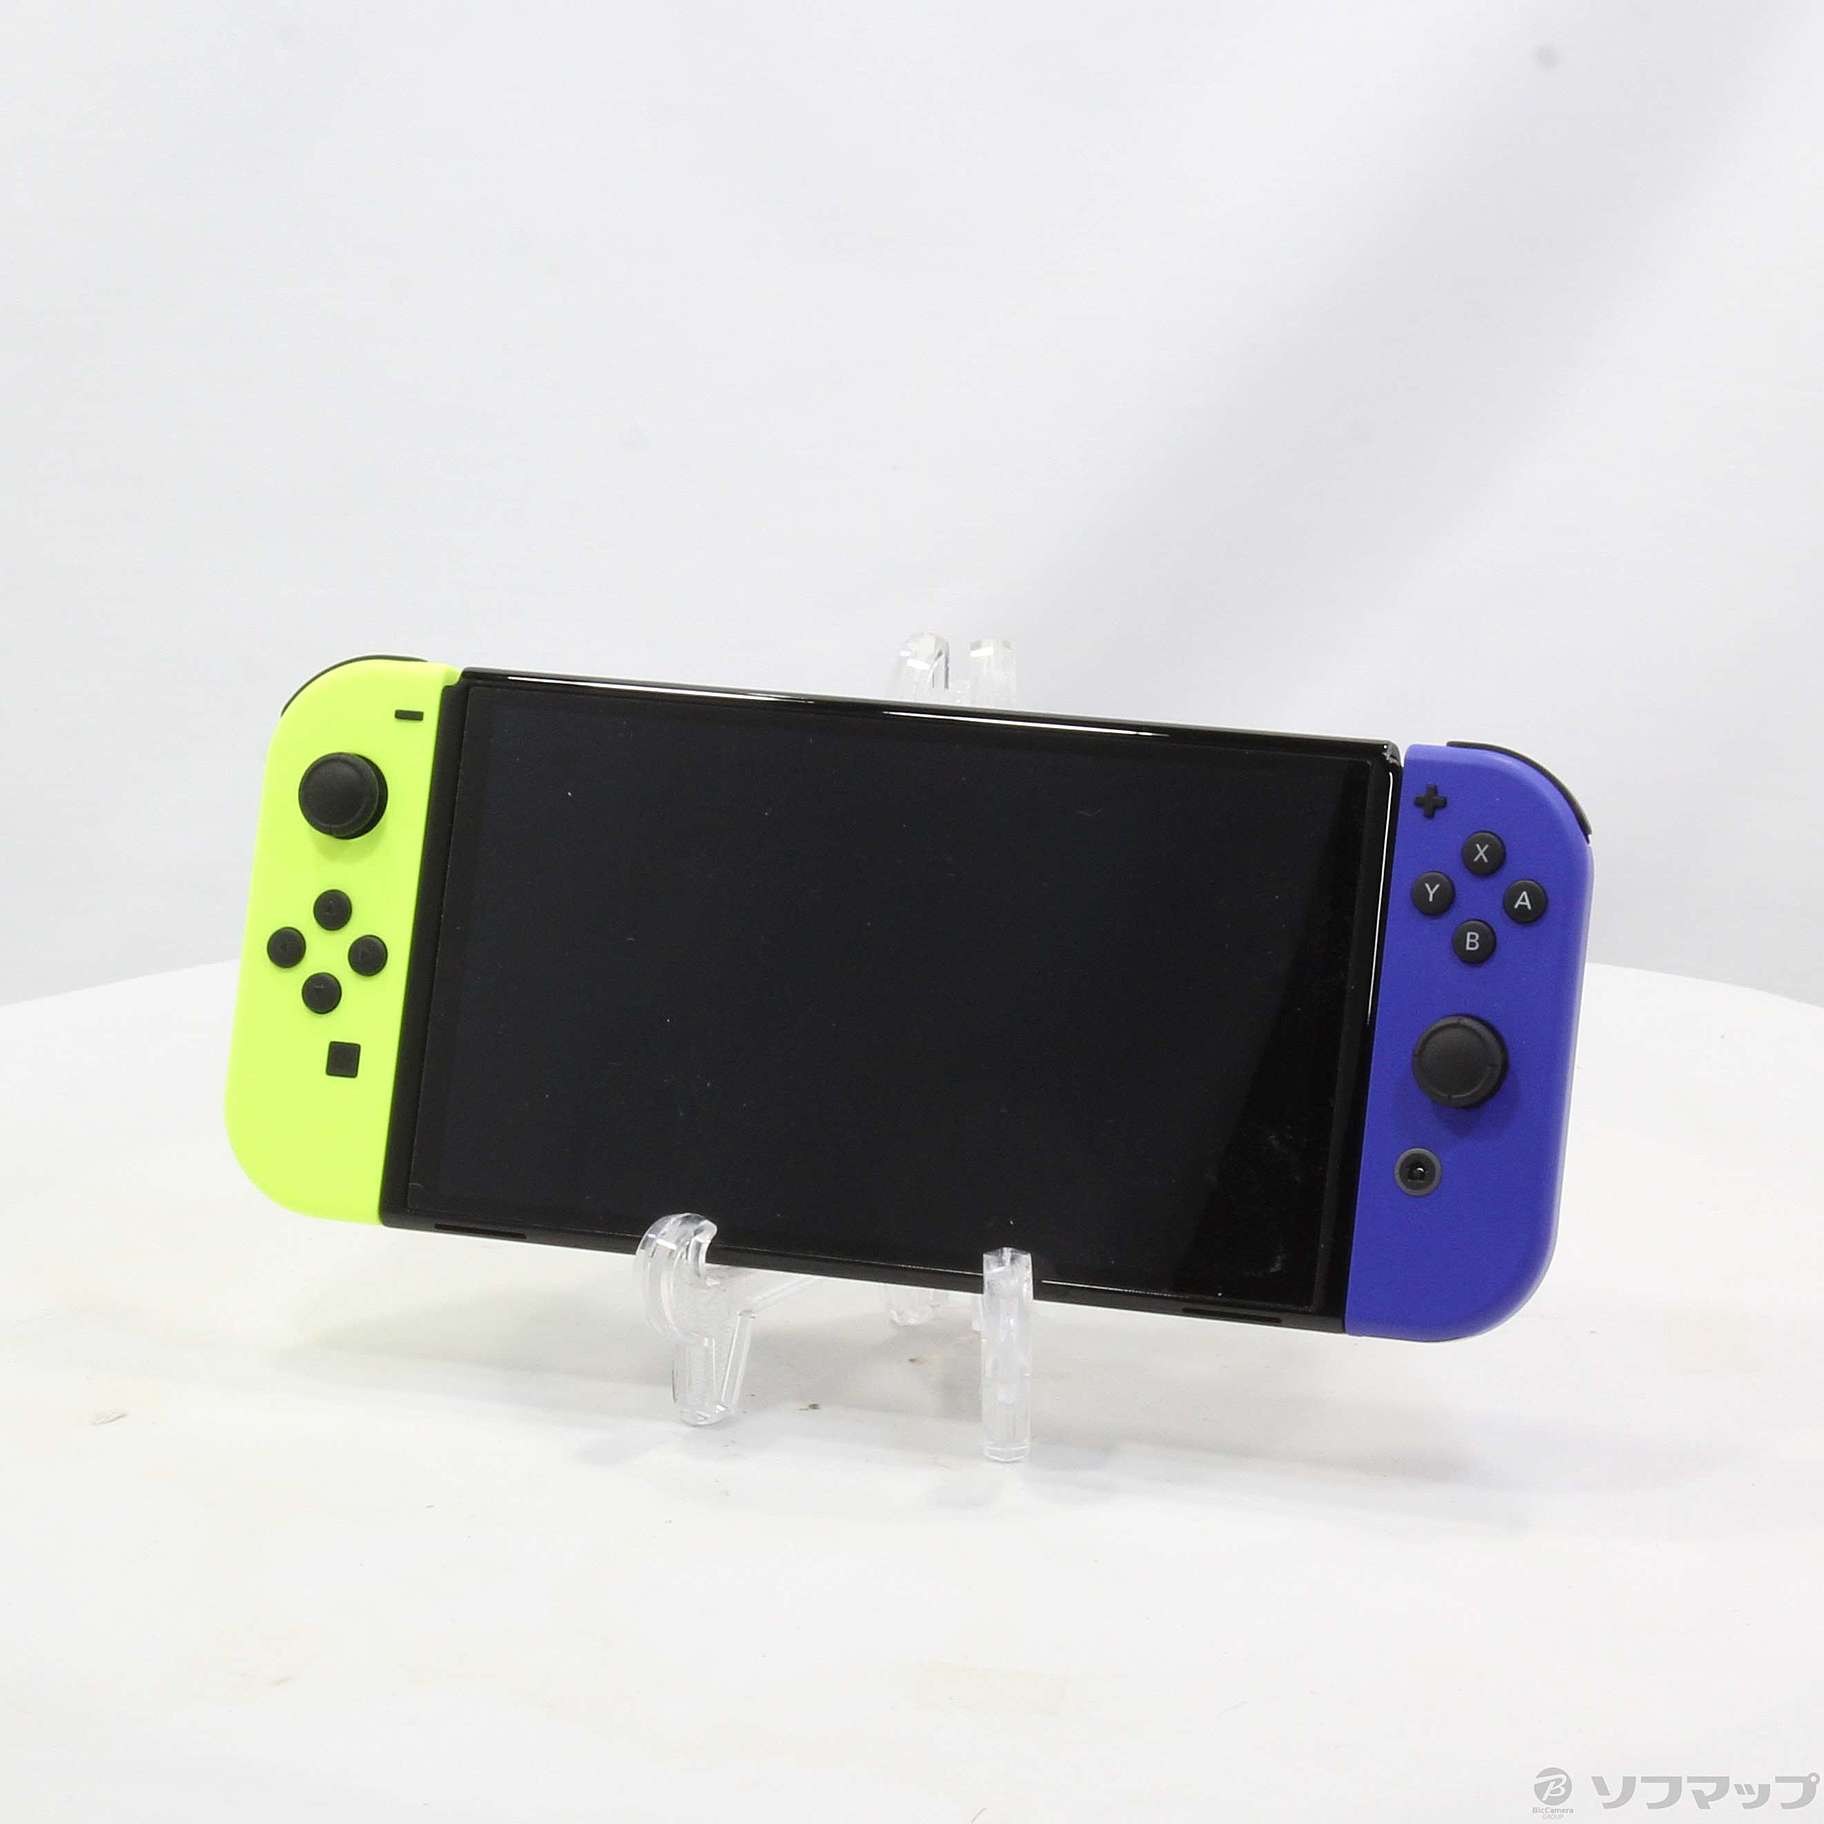 Nintendo Switch 有機ELモデル ストア版 中古 格安SALEスタート 